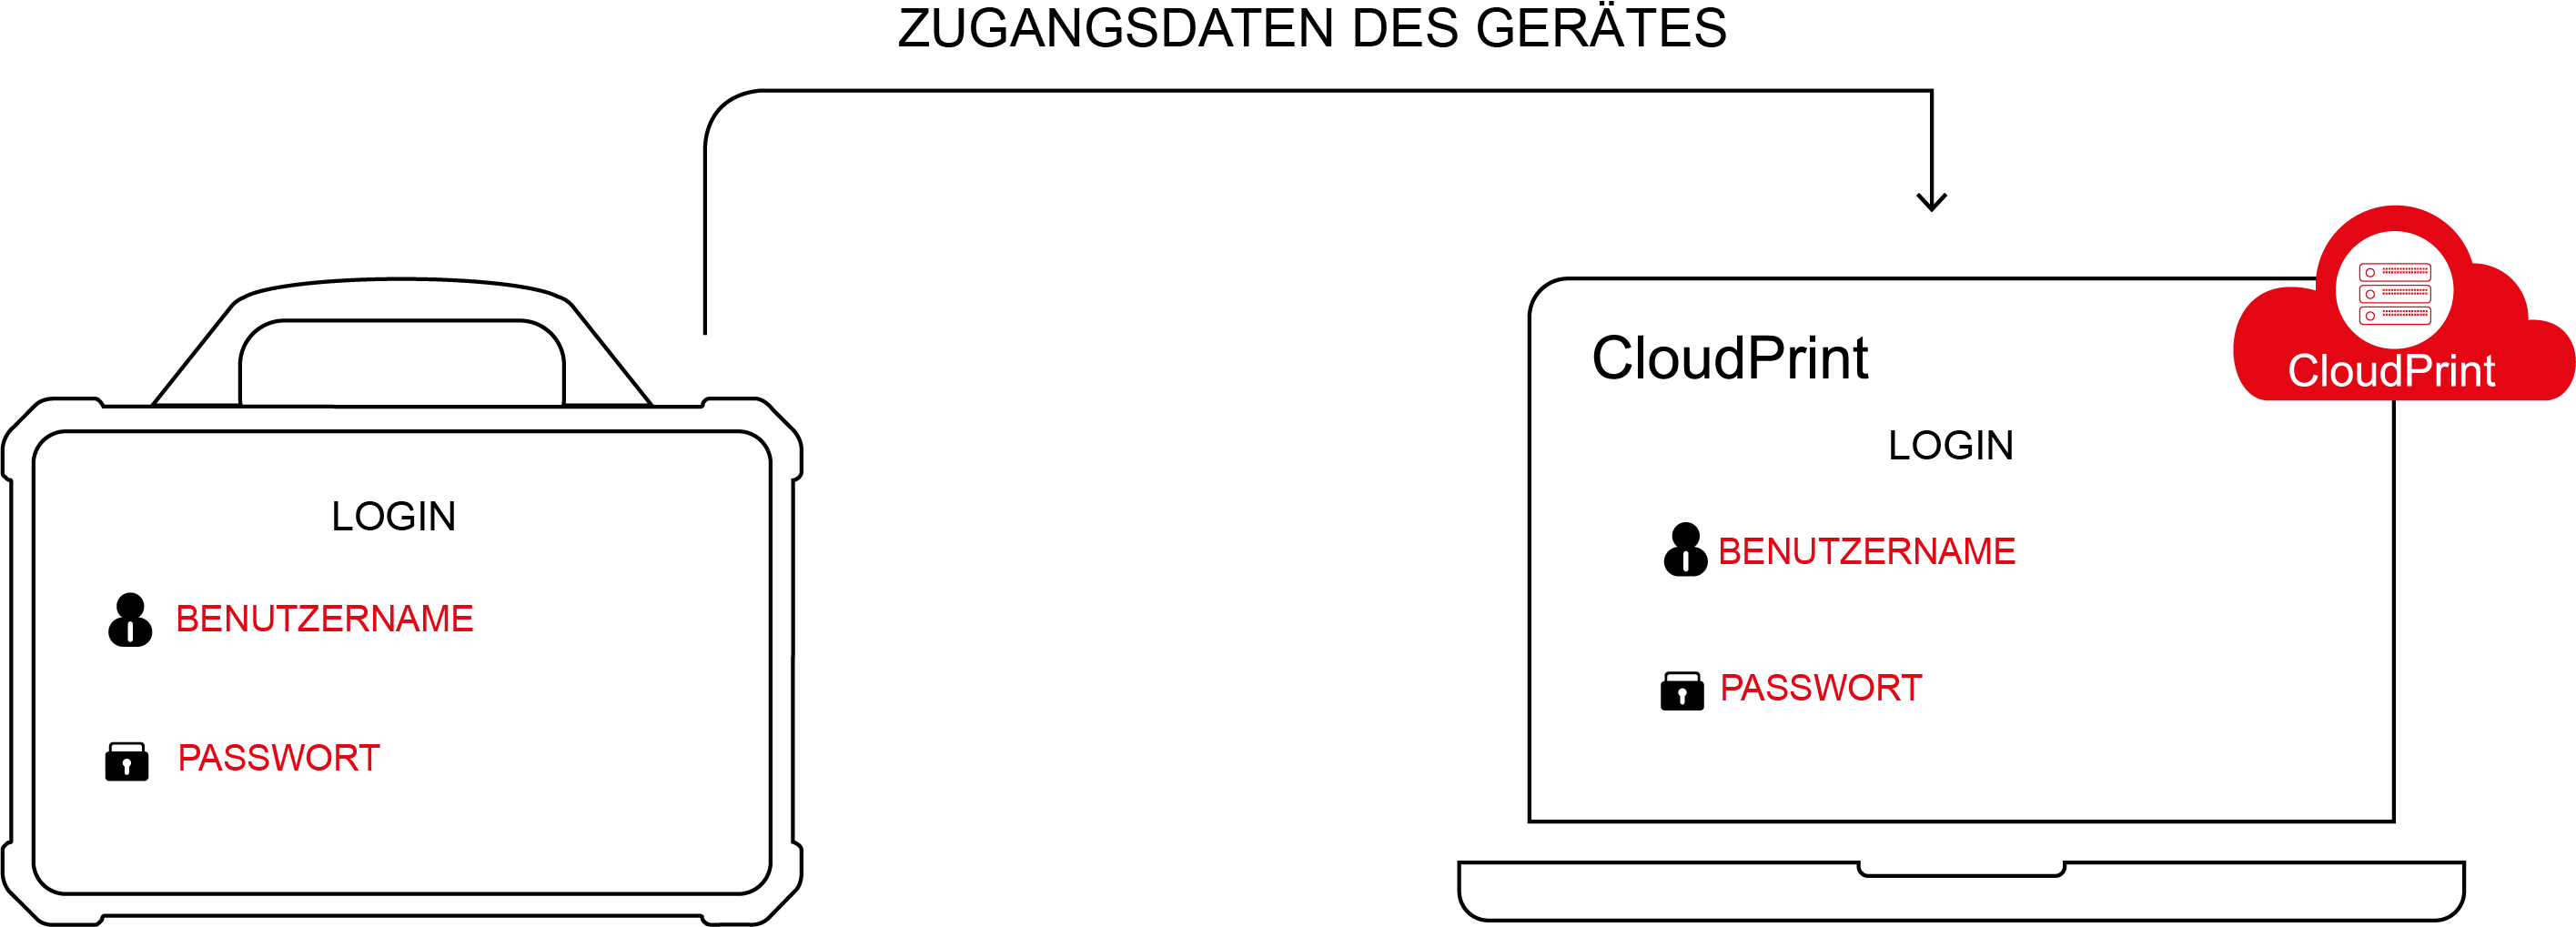 LAUNCH-Europe-Cloud-Print-Platform-zugang